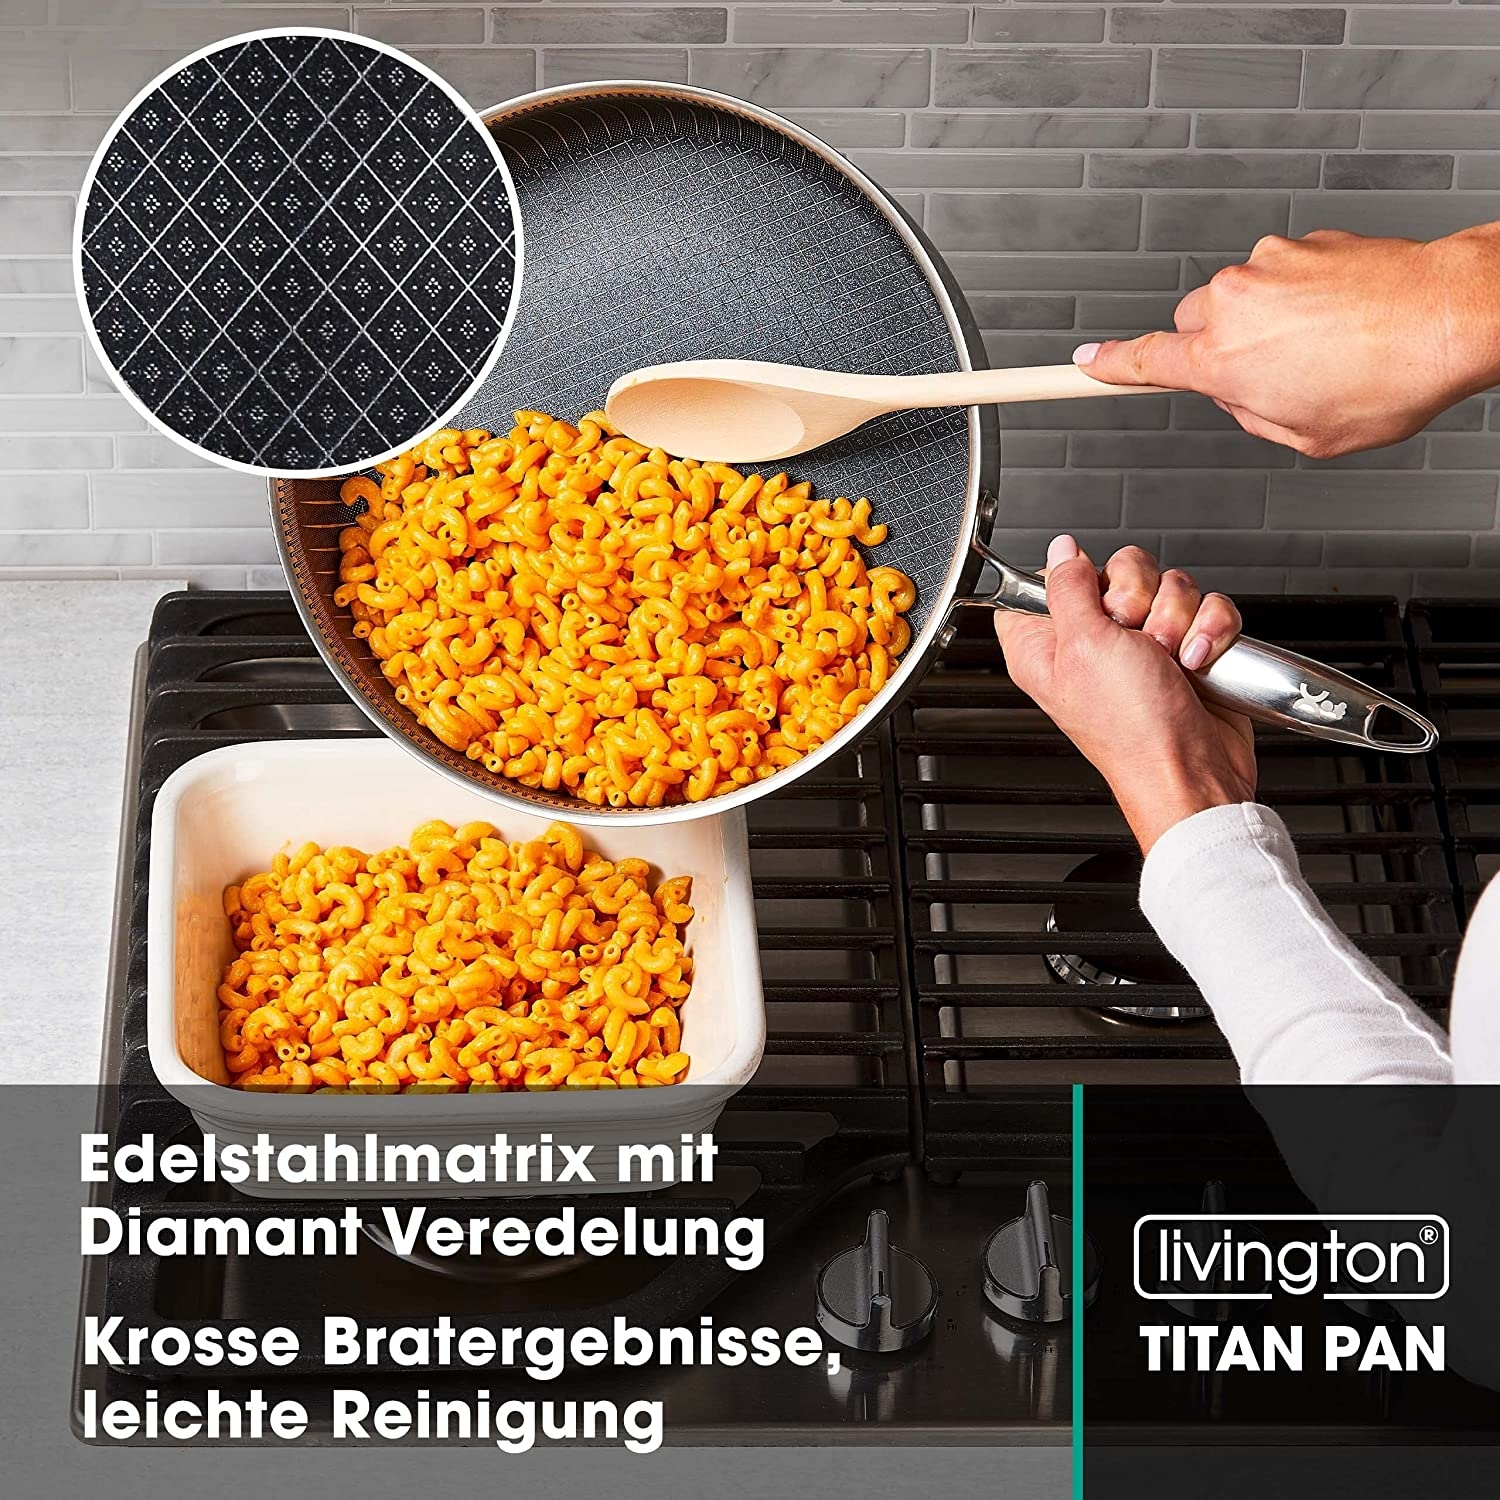 LIVINGTON Titan Pan 28cm Titanium) Beschichtung: (Edelstahl, Set Pfannen